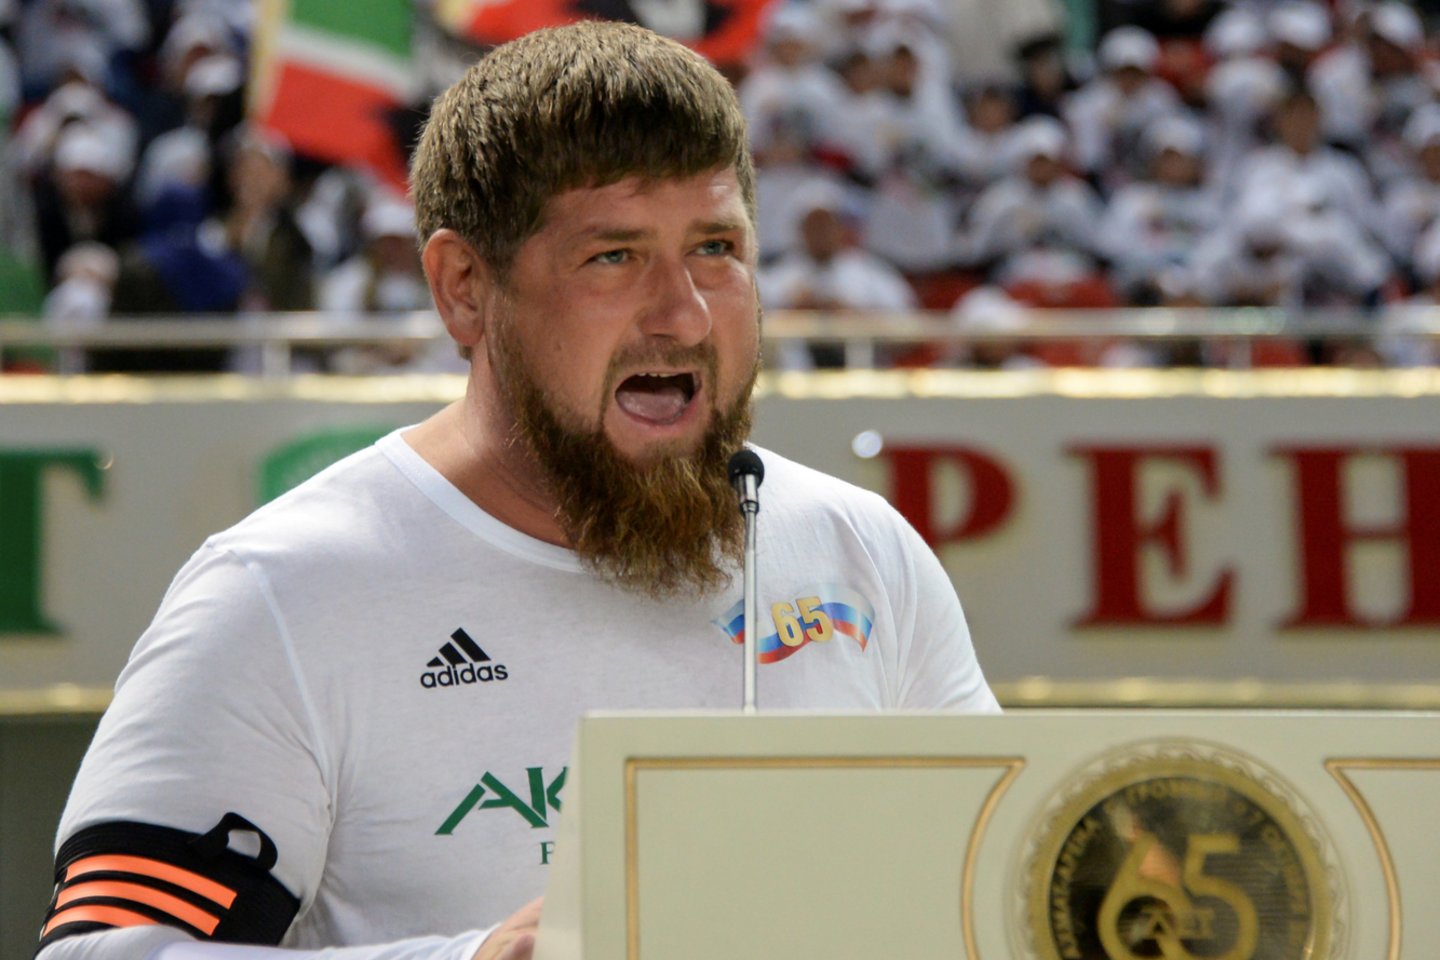  Čečėnijos prezidentas Ramzanas Kadyrovas<br> Reuters/Scanpix.com  nuotr.